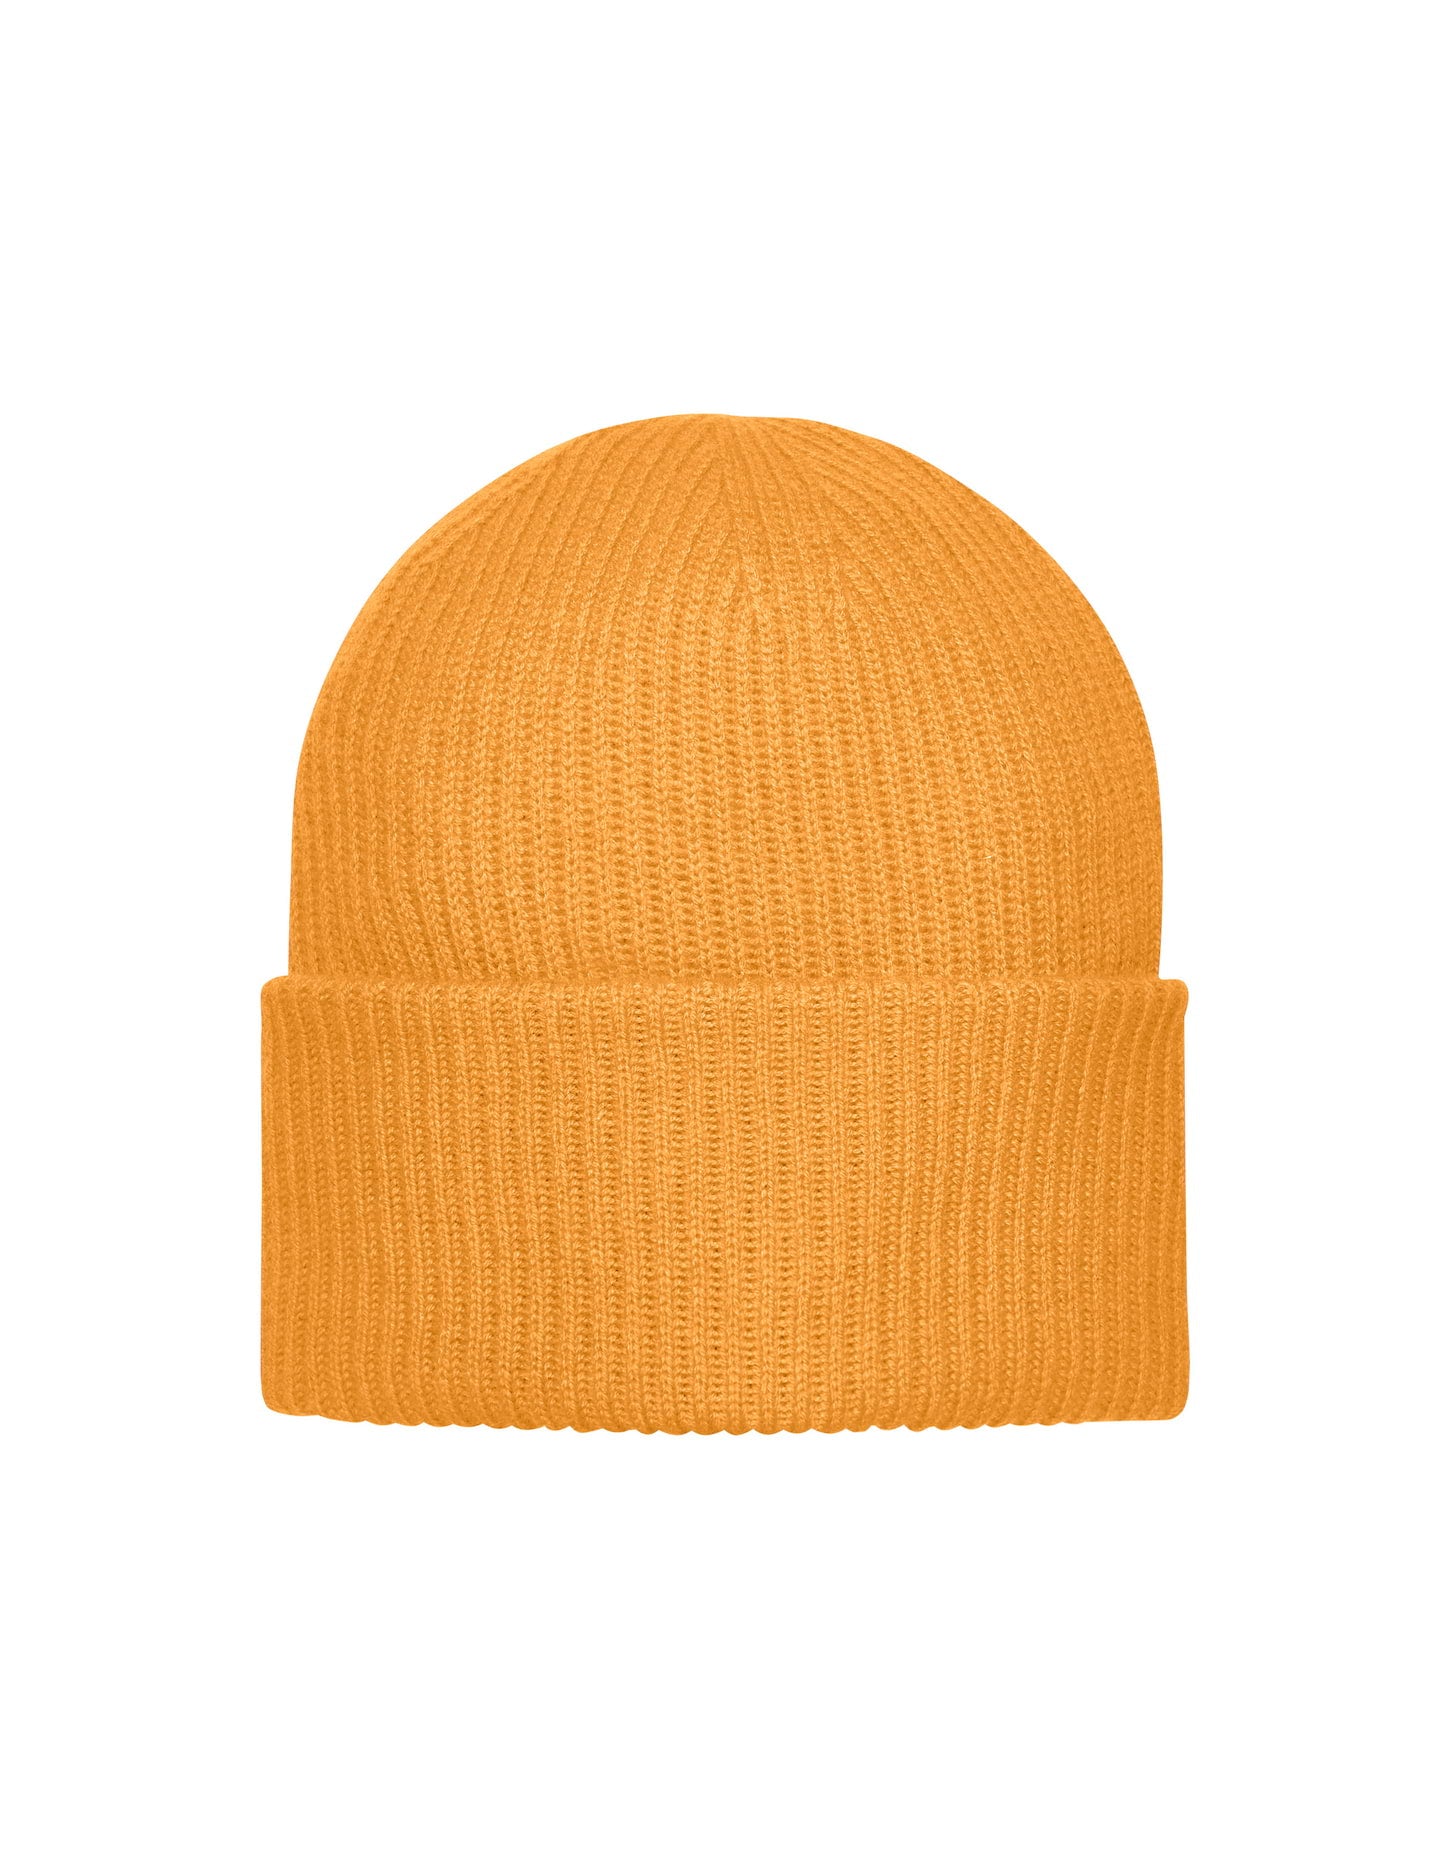 Berta cap (Crush Orange)